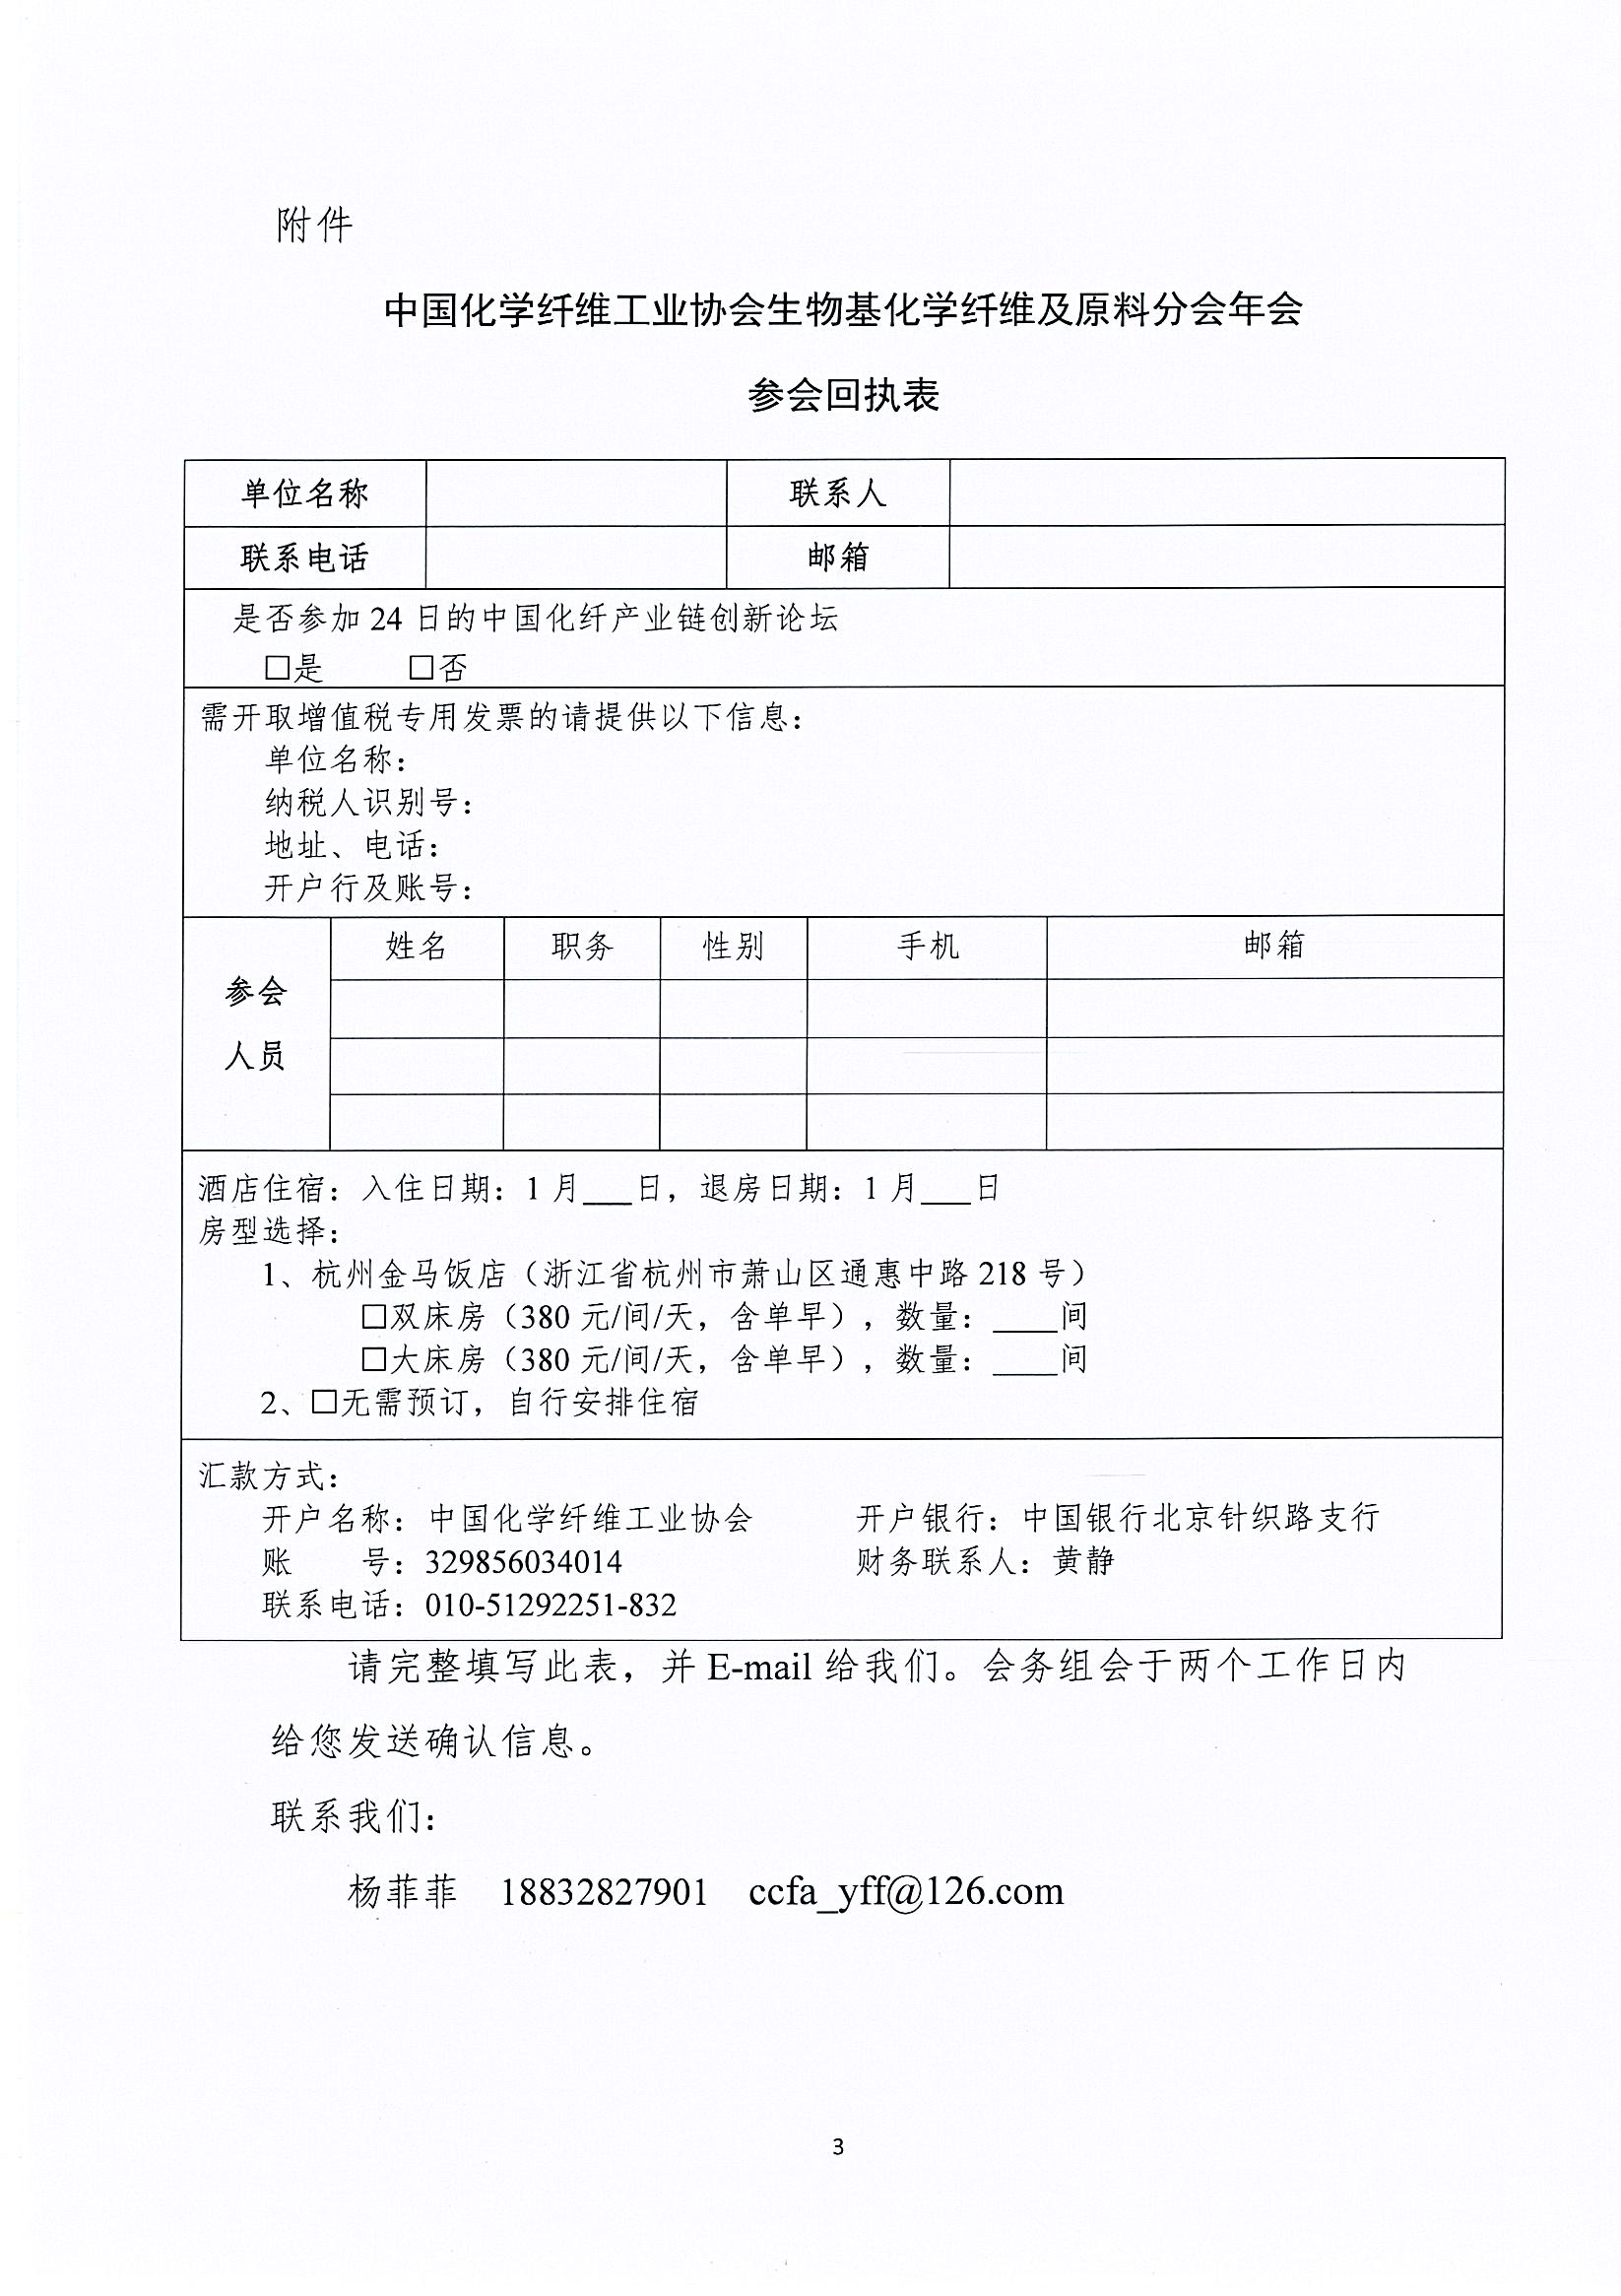 关于举办中国化学纤维工业协会生物基化学纤维及原料分会年会的通知1852_页面_3.jpg